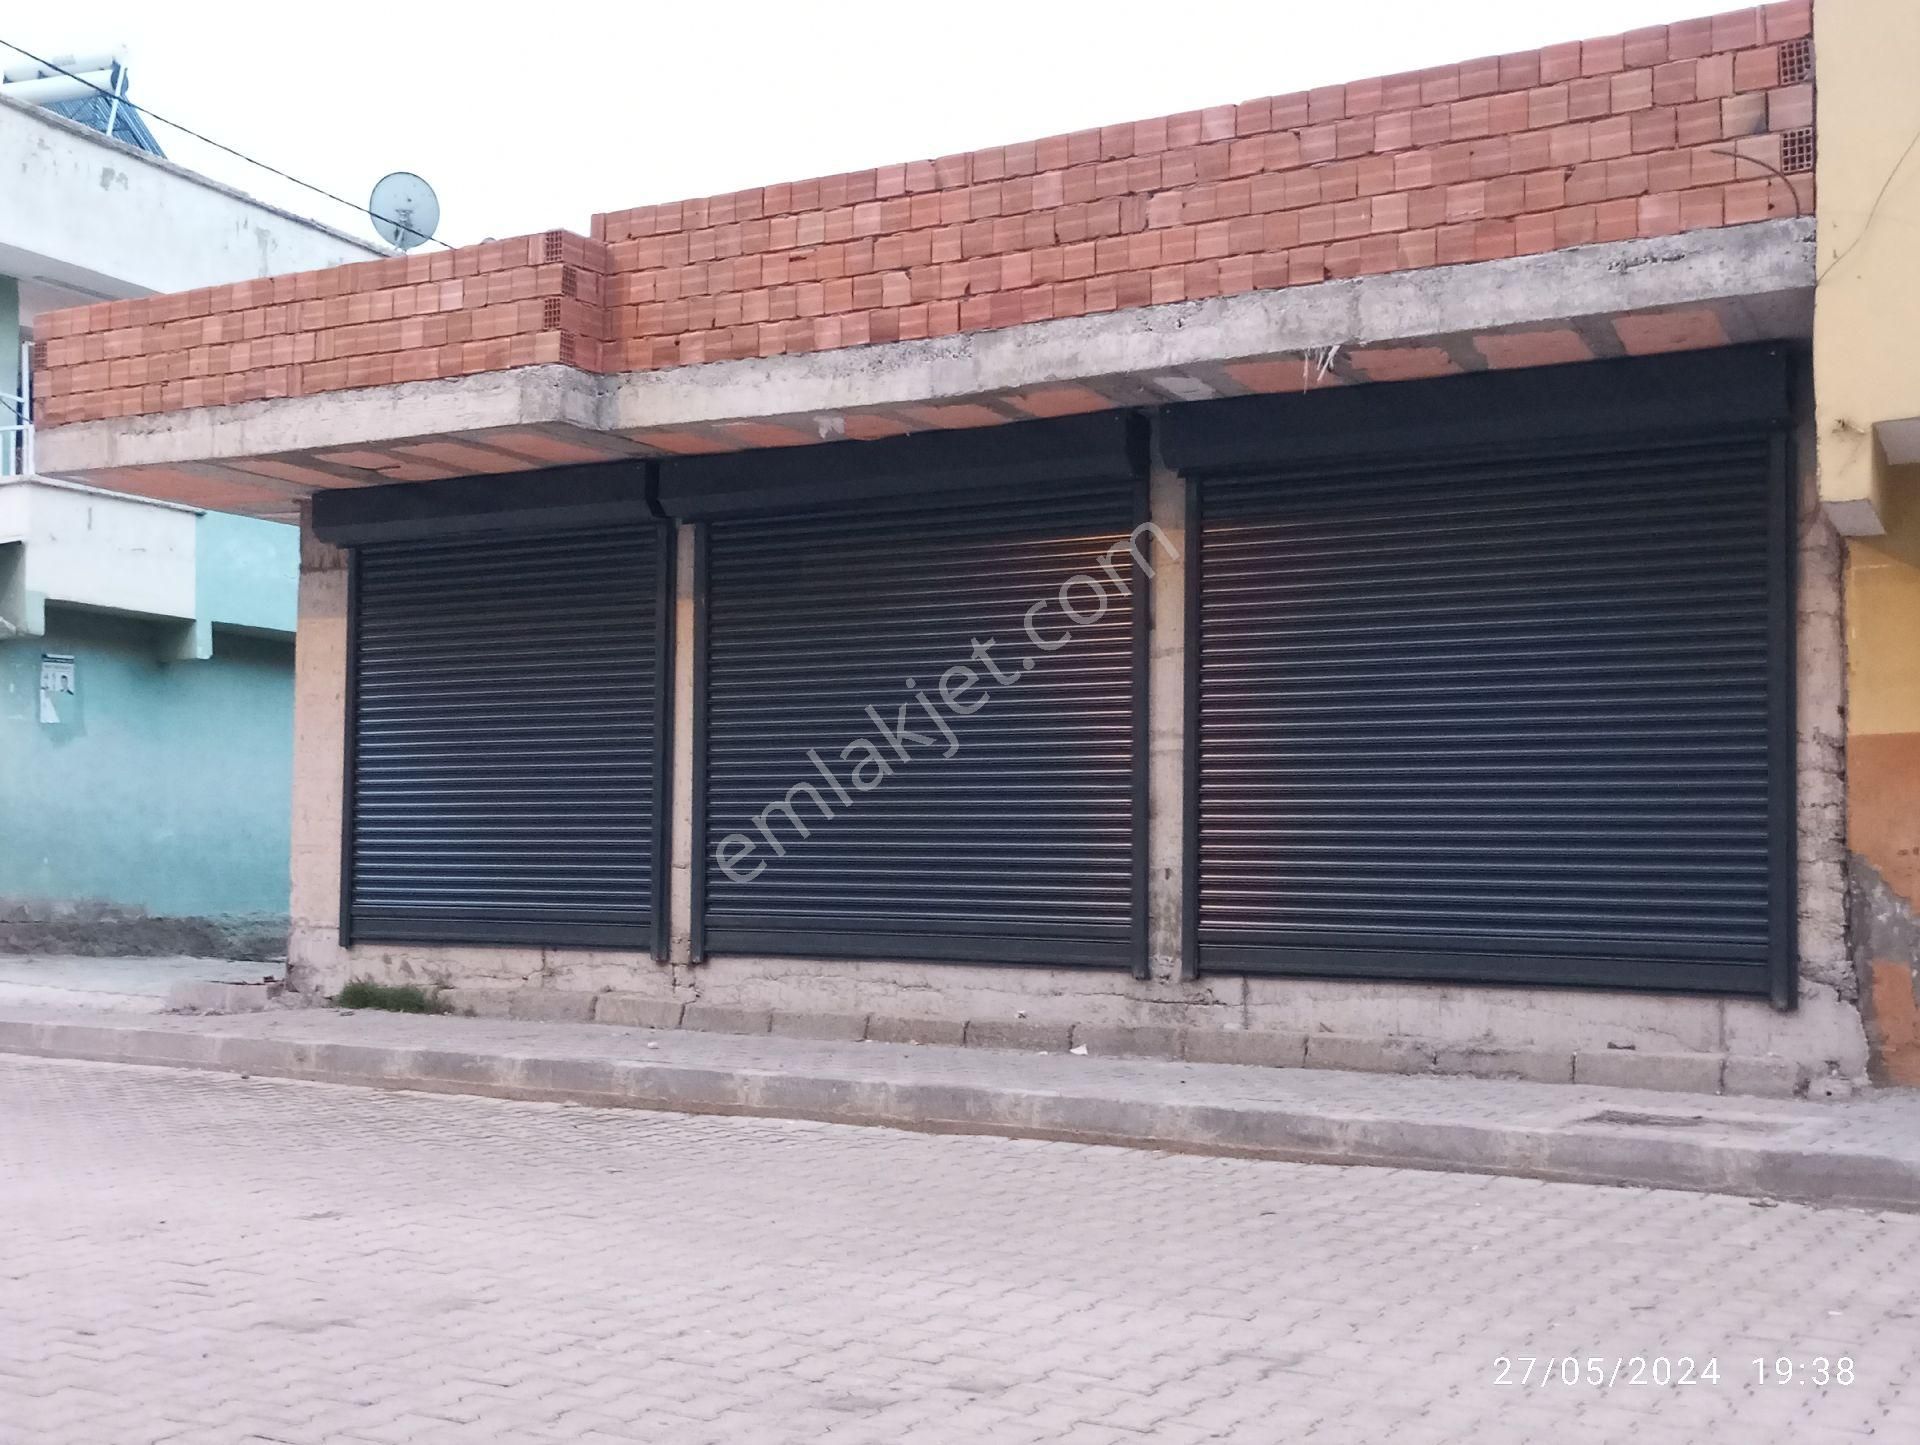 Yenişehir Şehitlik Kiralık Dükkan & Mağaza Sahibinden kiralık dükkan yeni inşaatı bitti 0 dükkan daha kulanılmamış